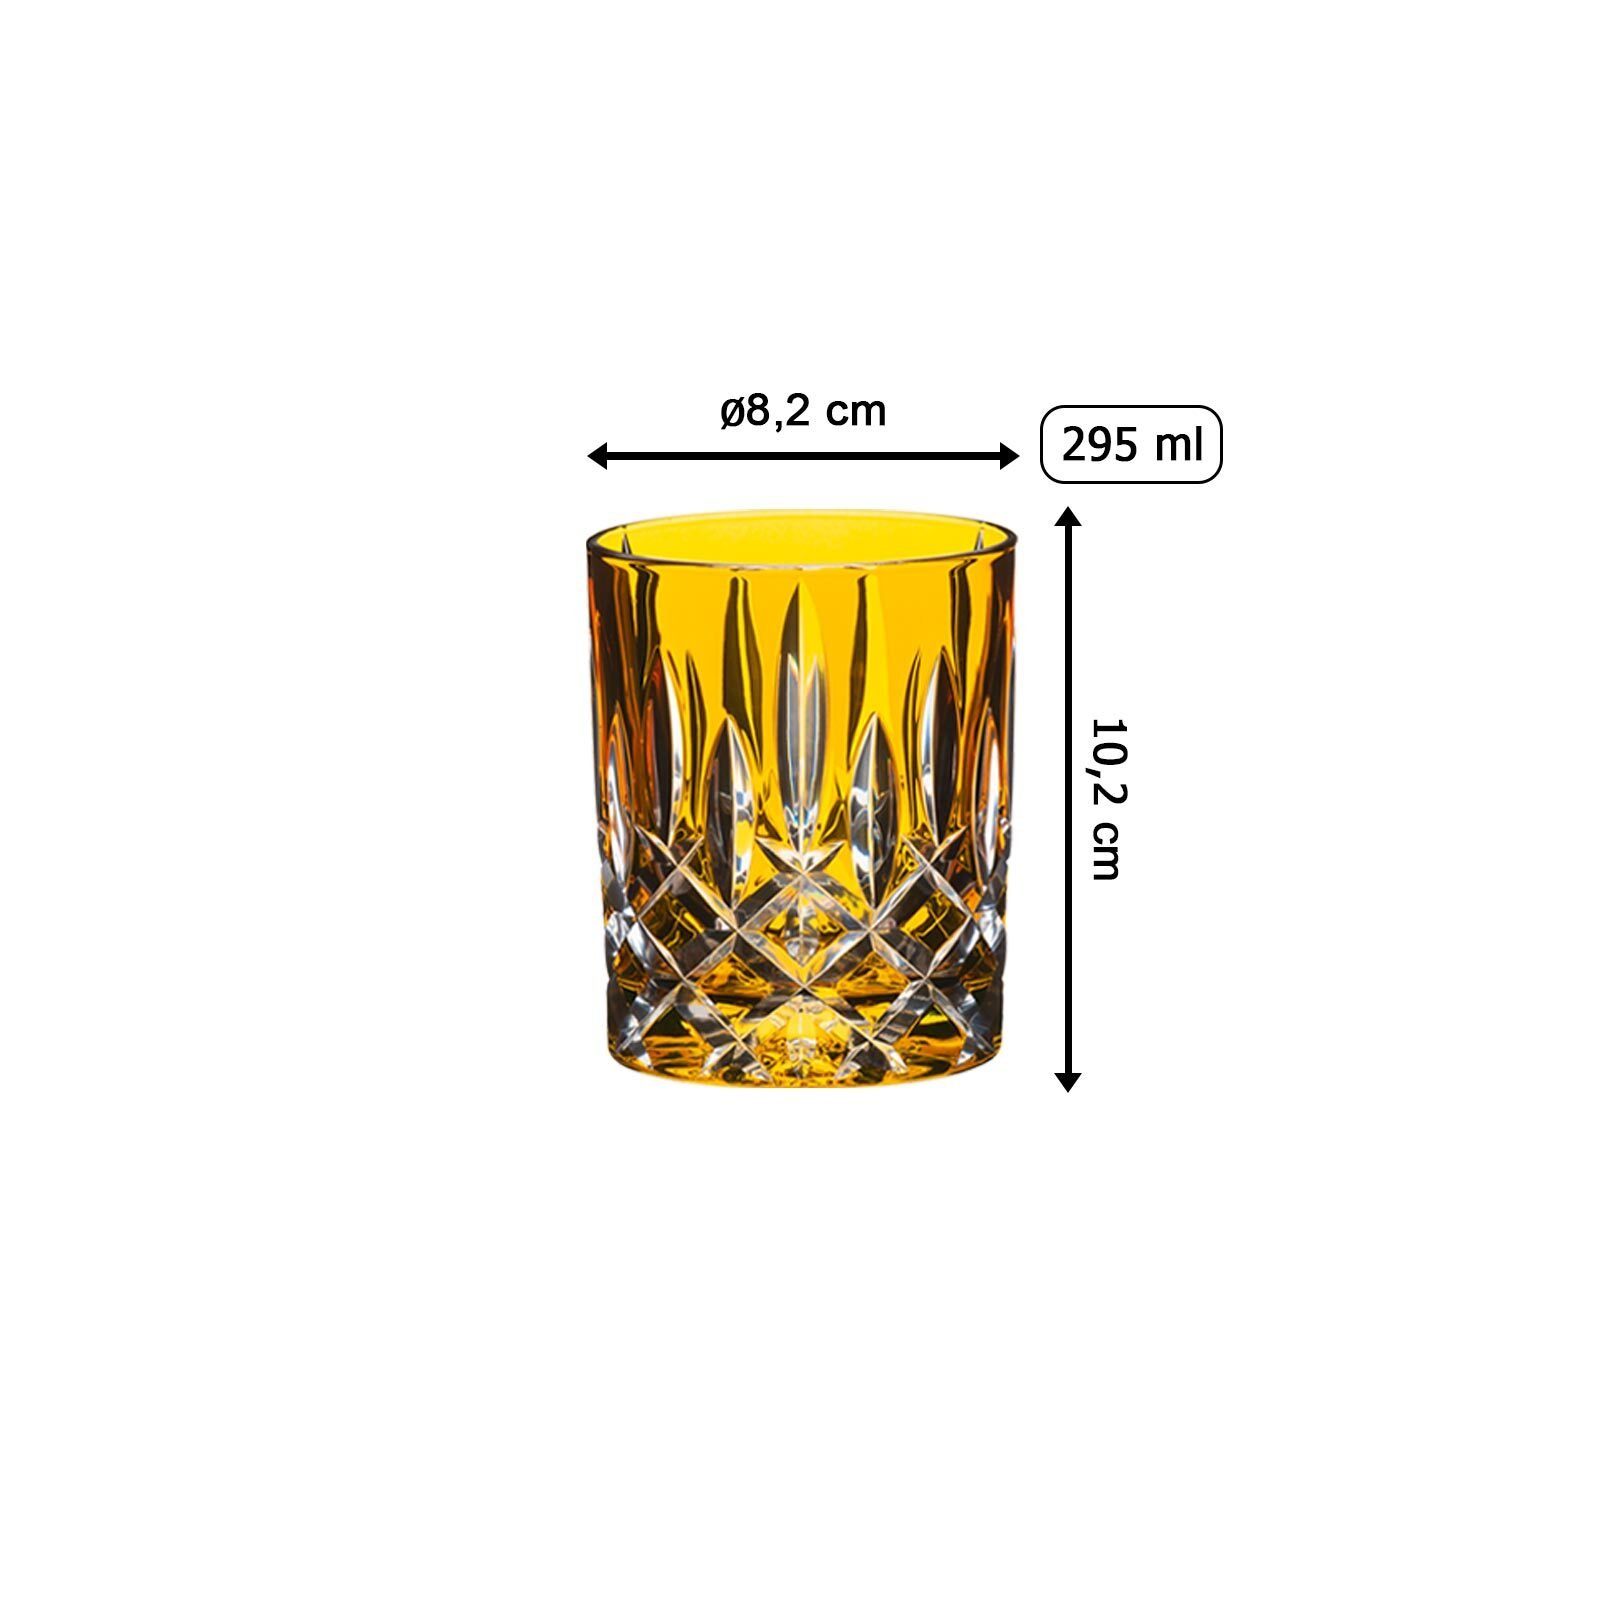 RIEDEL Glas Whiskyglas Glas Bernstein 295 ml, Whiskyglas Laudon